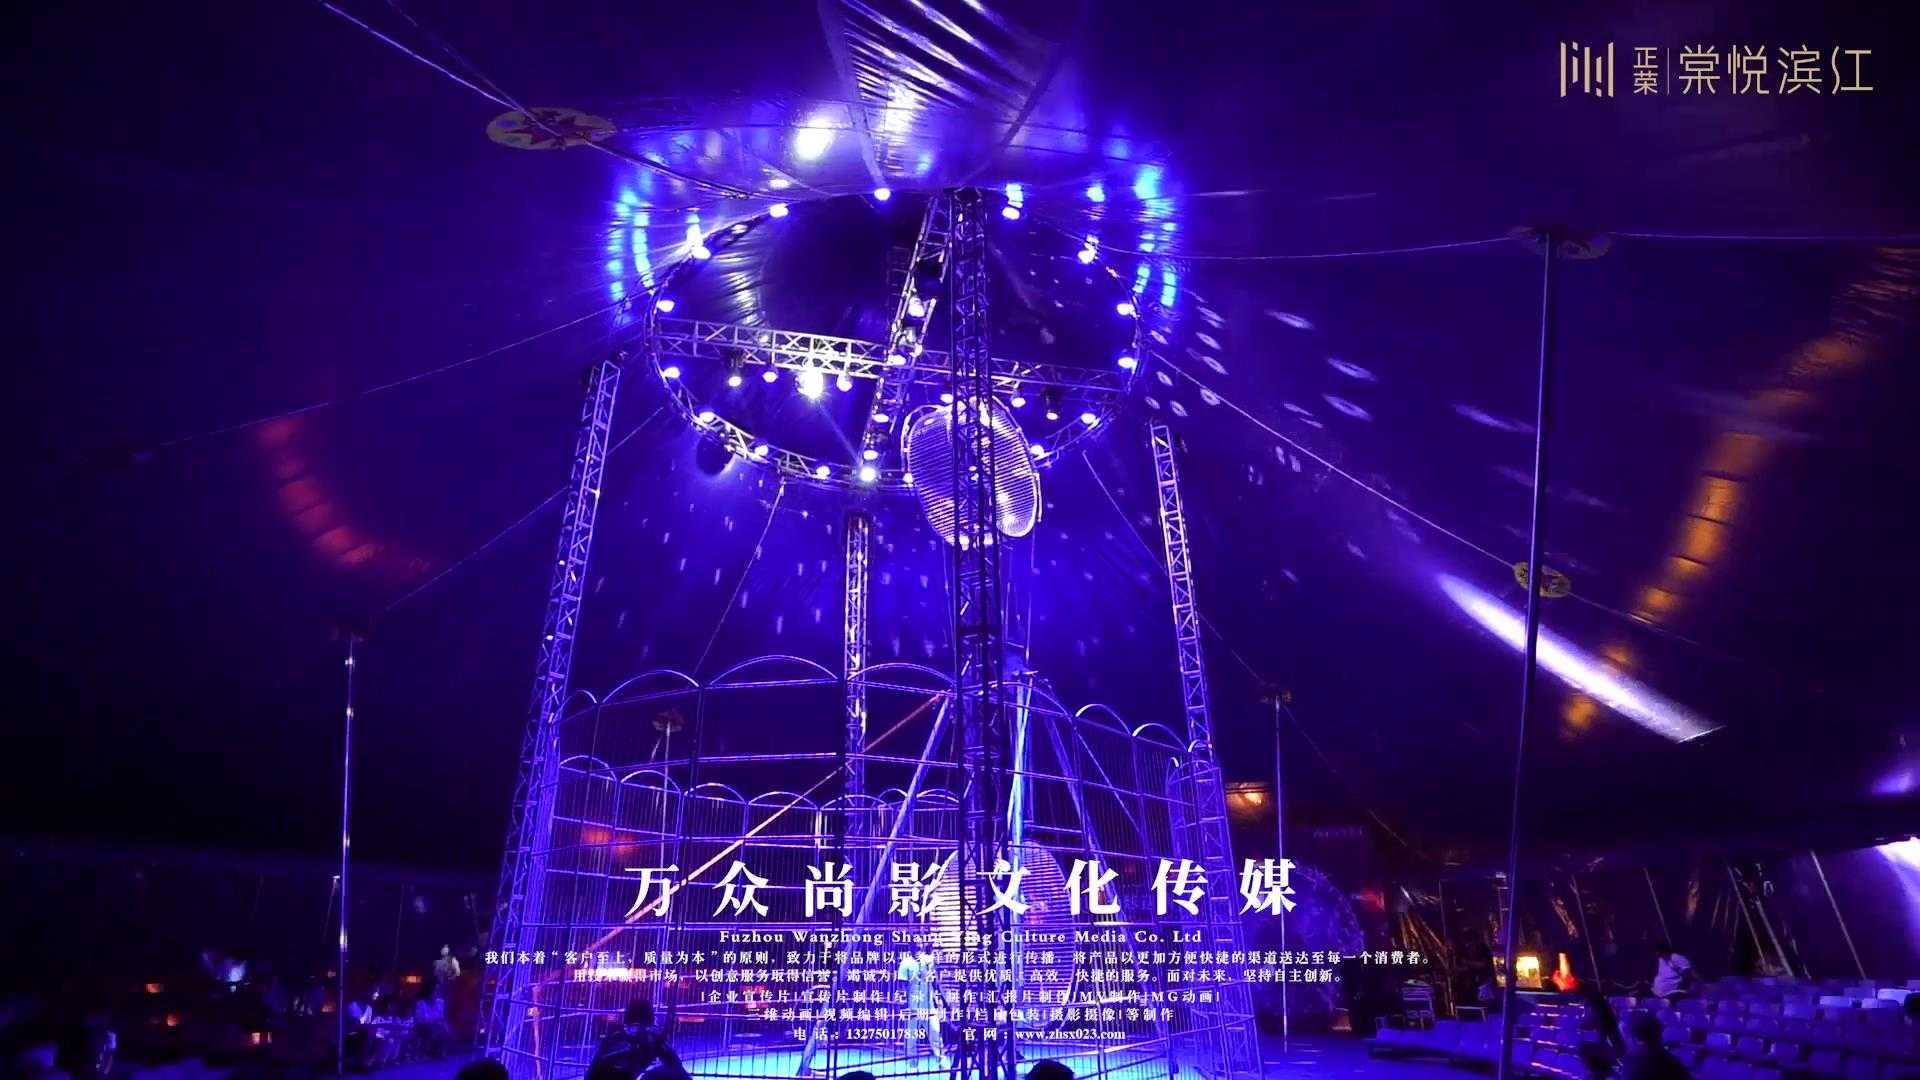 万众尚影:皇家马戏团福州宣传片拍摄